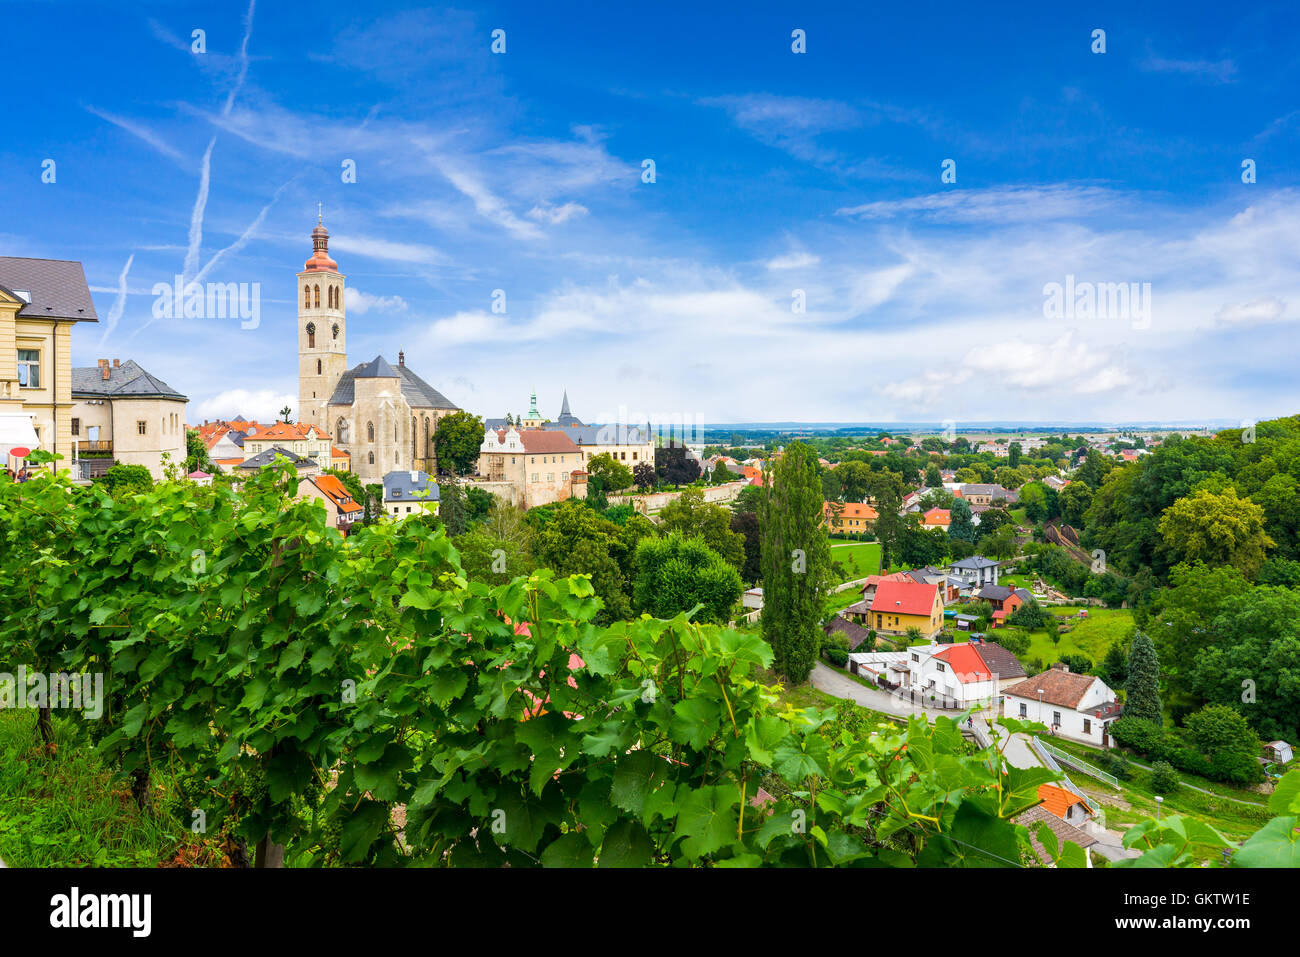 Donnant sur le vignoble et la ville de Kutna Hora, République Tchèque Banque D'Images